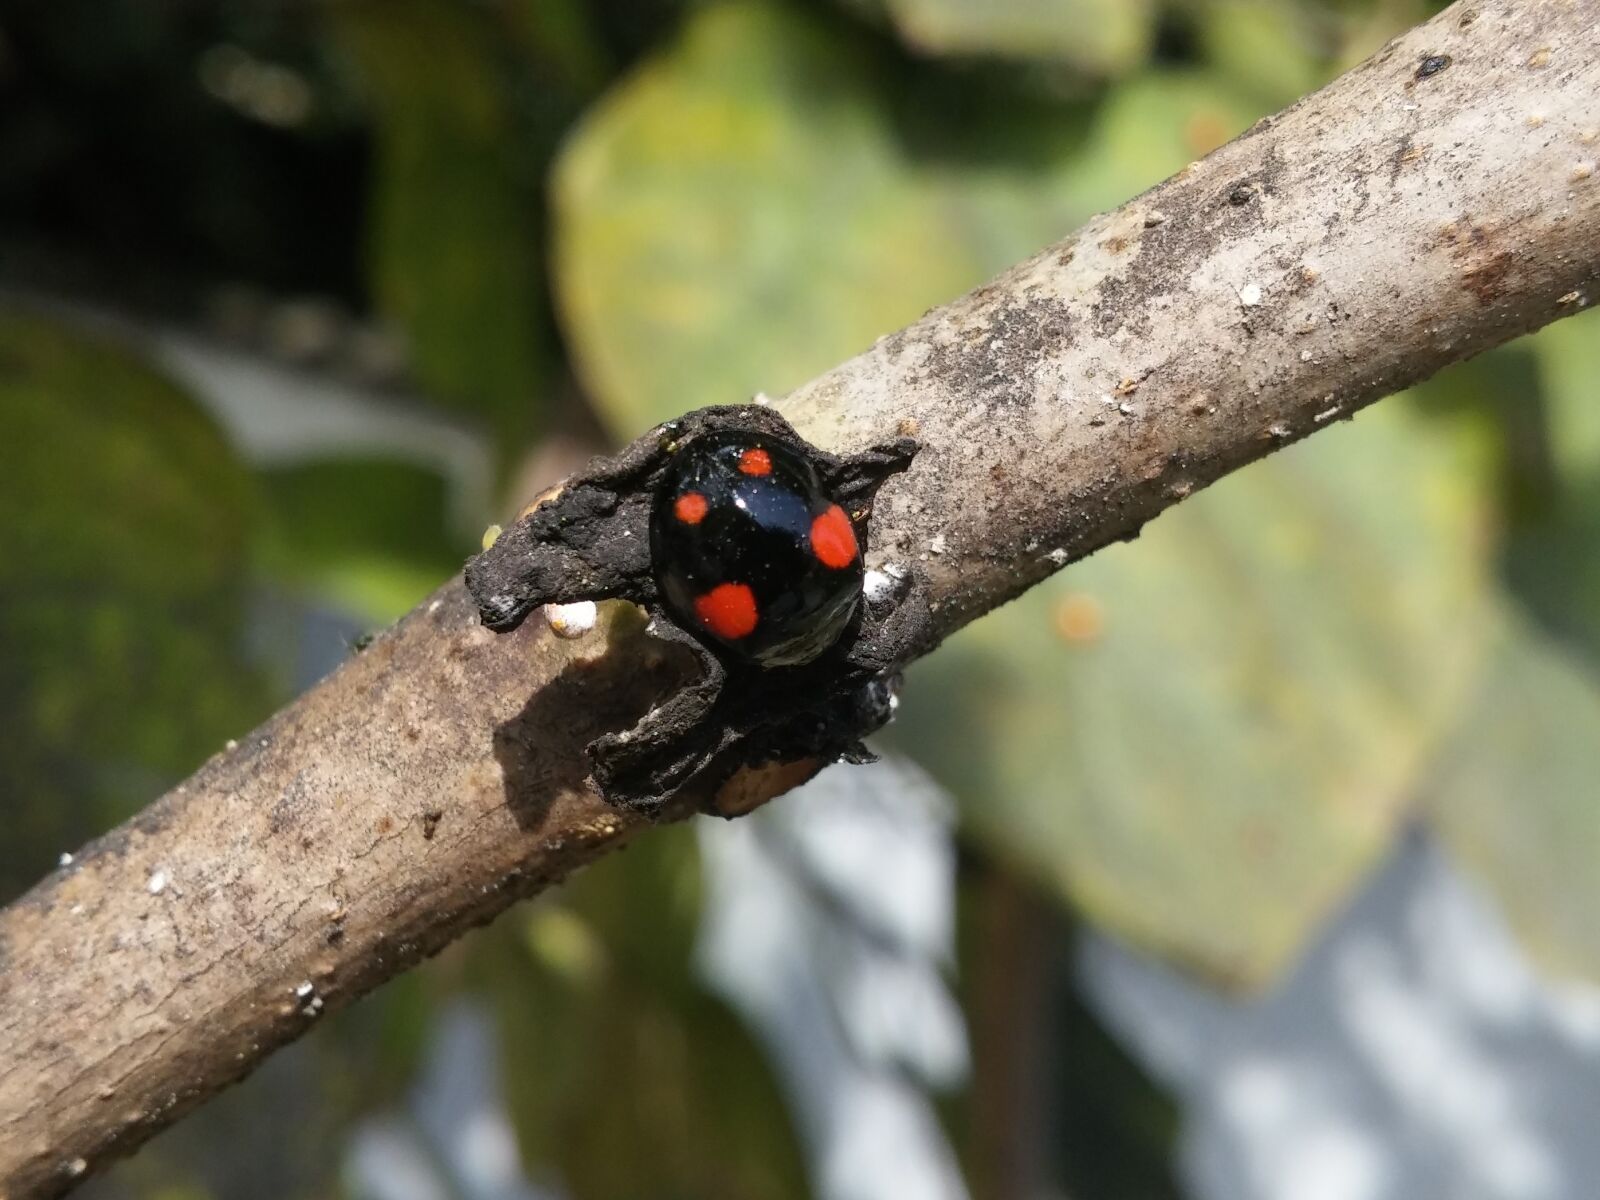 LG D855 sample photo. Ladybug, nature, beetle photography